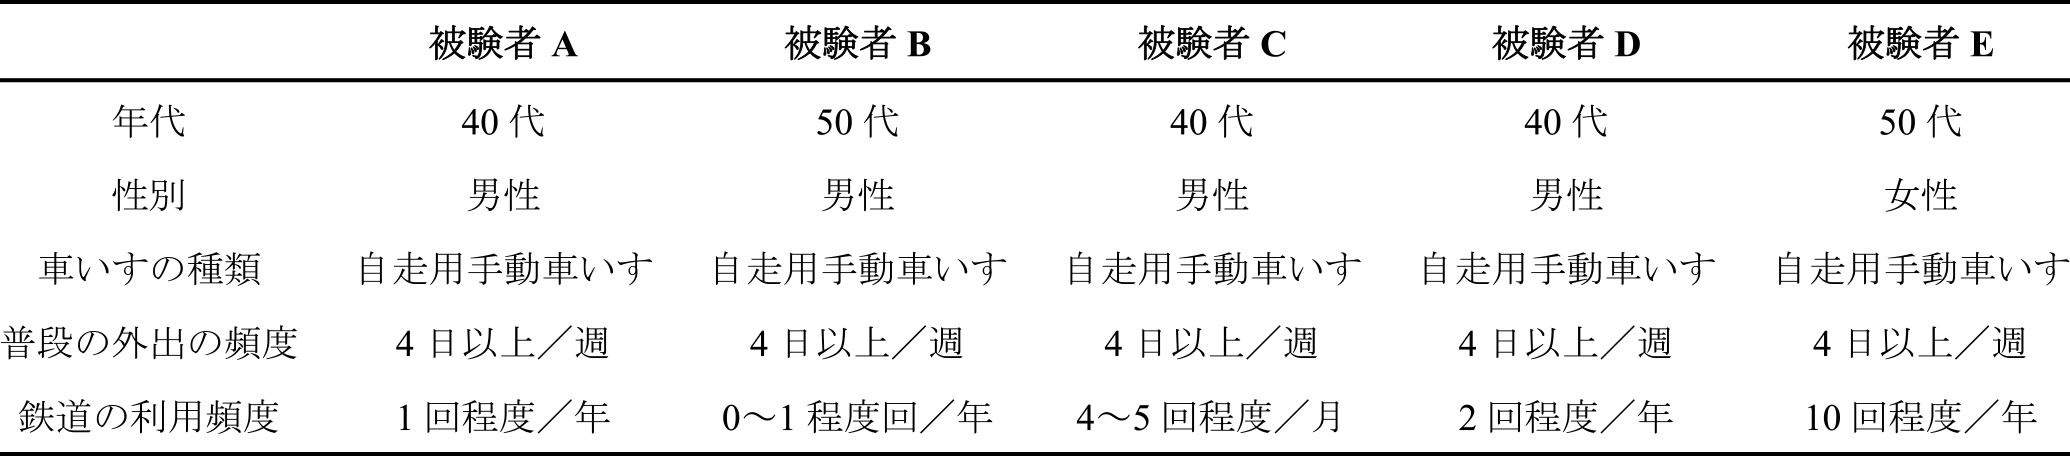 被験者のプロフィール　Profile of the subjects.